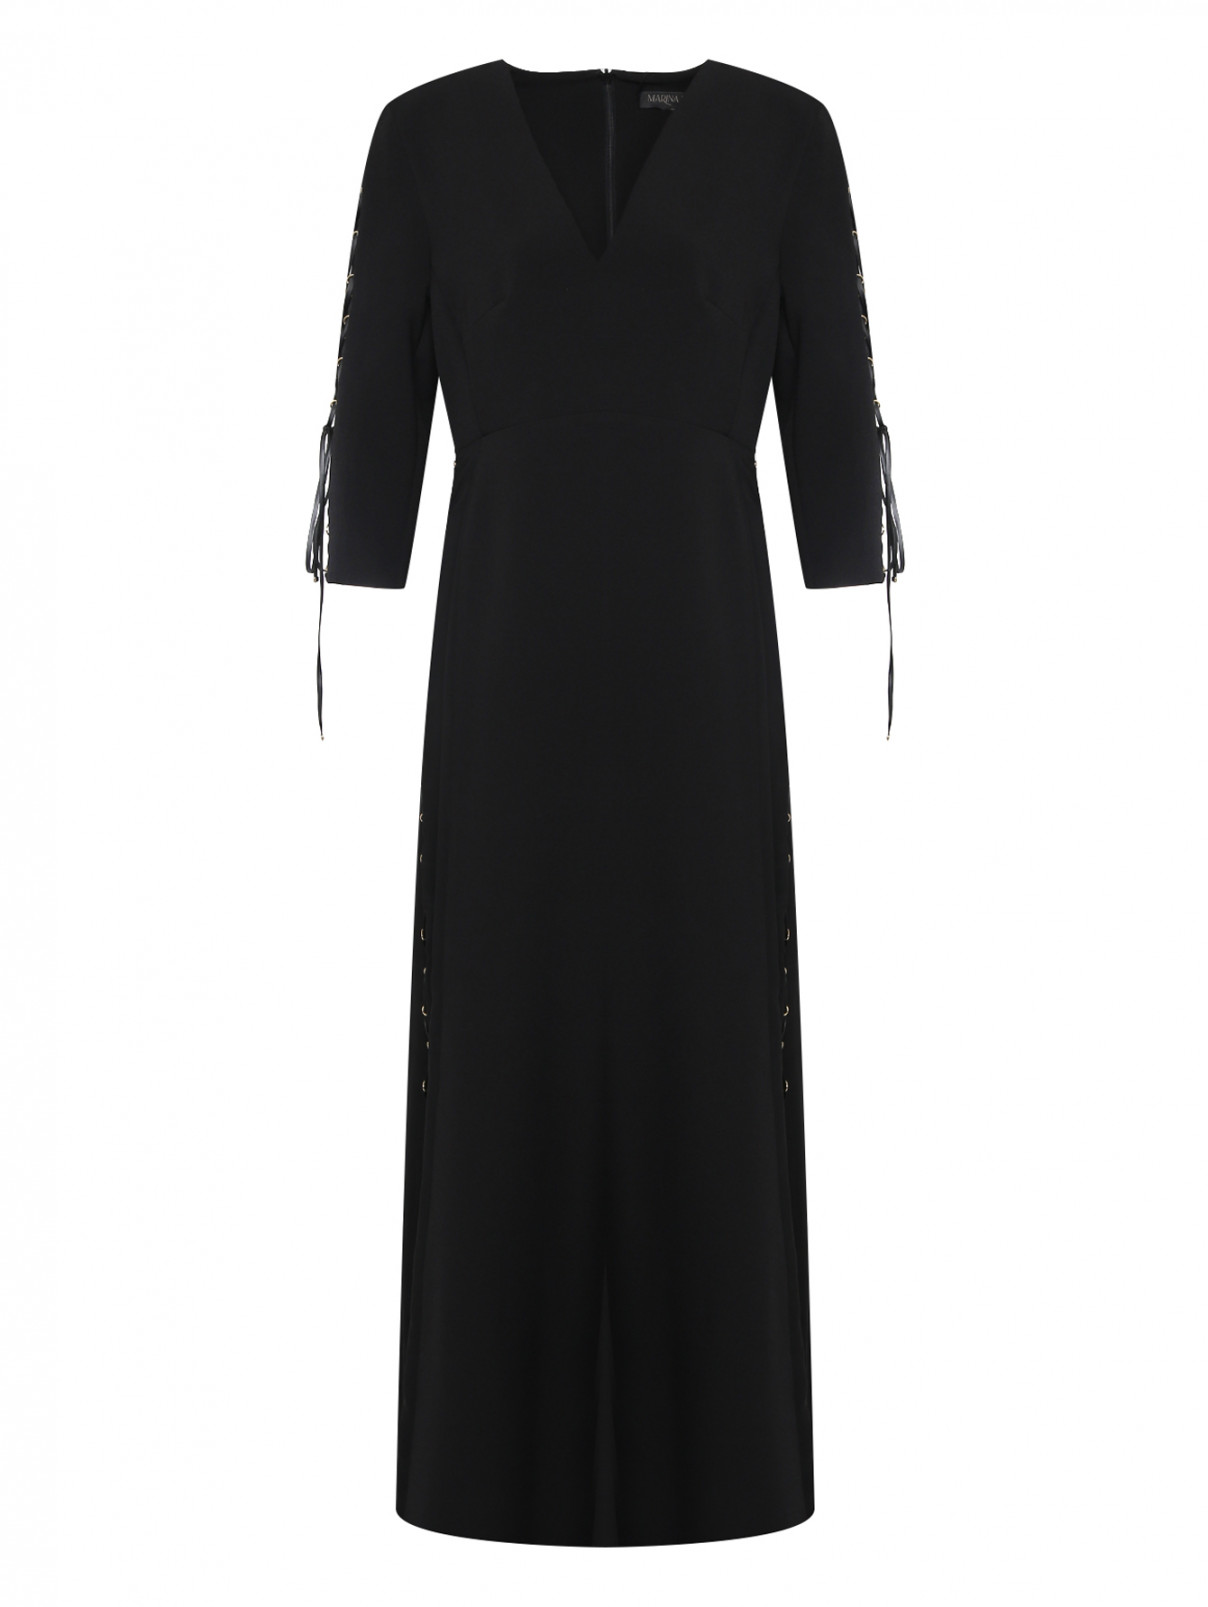 Платье макси с v образным вырезом и металлическими аппликациями Marina Rinaldi  –  Общий вид  – Цвет:  Черный